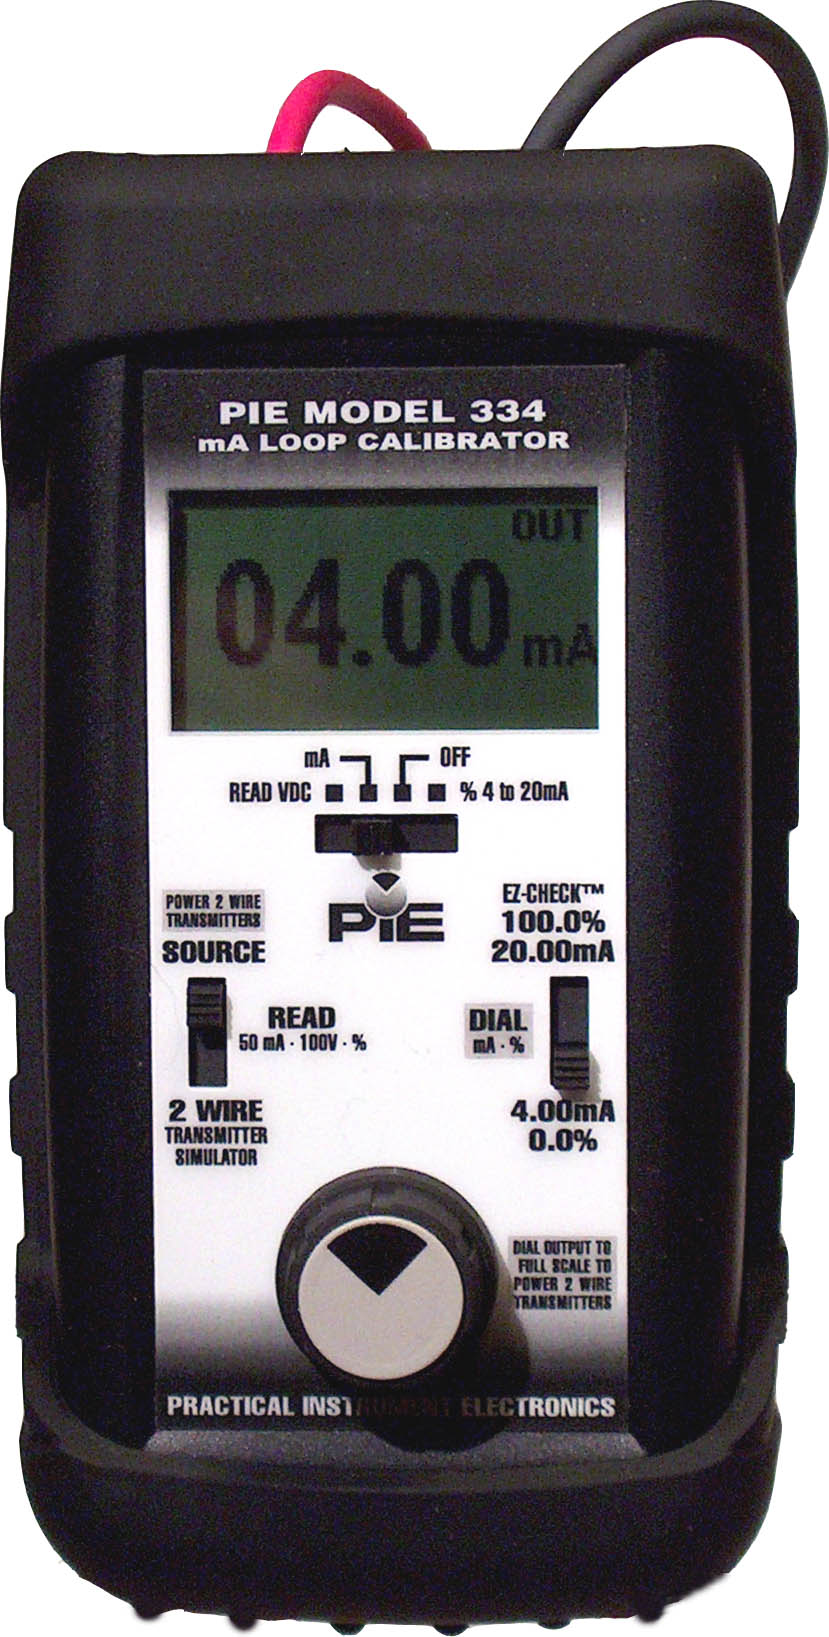 PIE 334 Plus Loop Calibrator